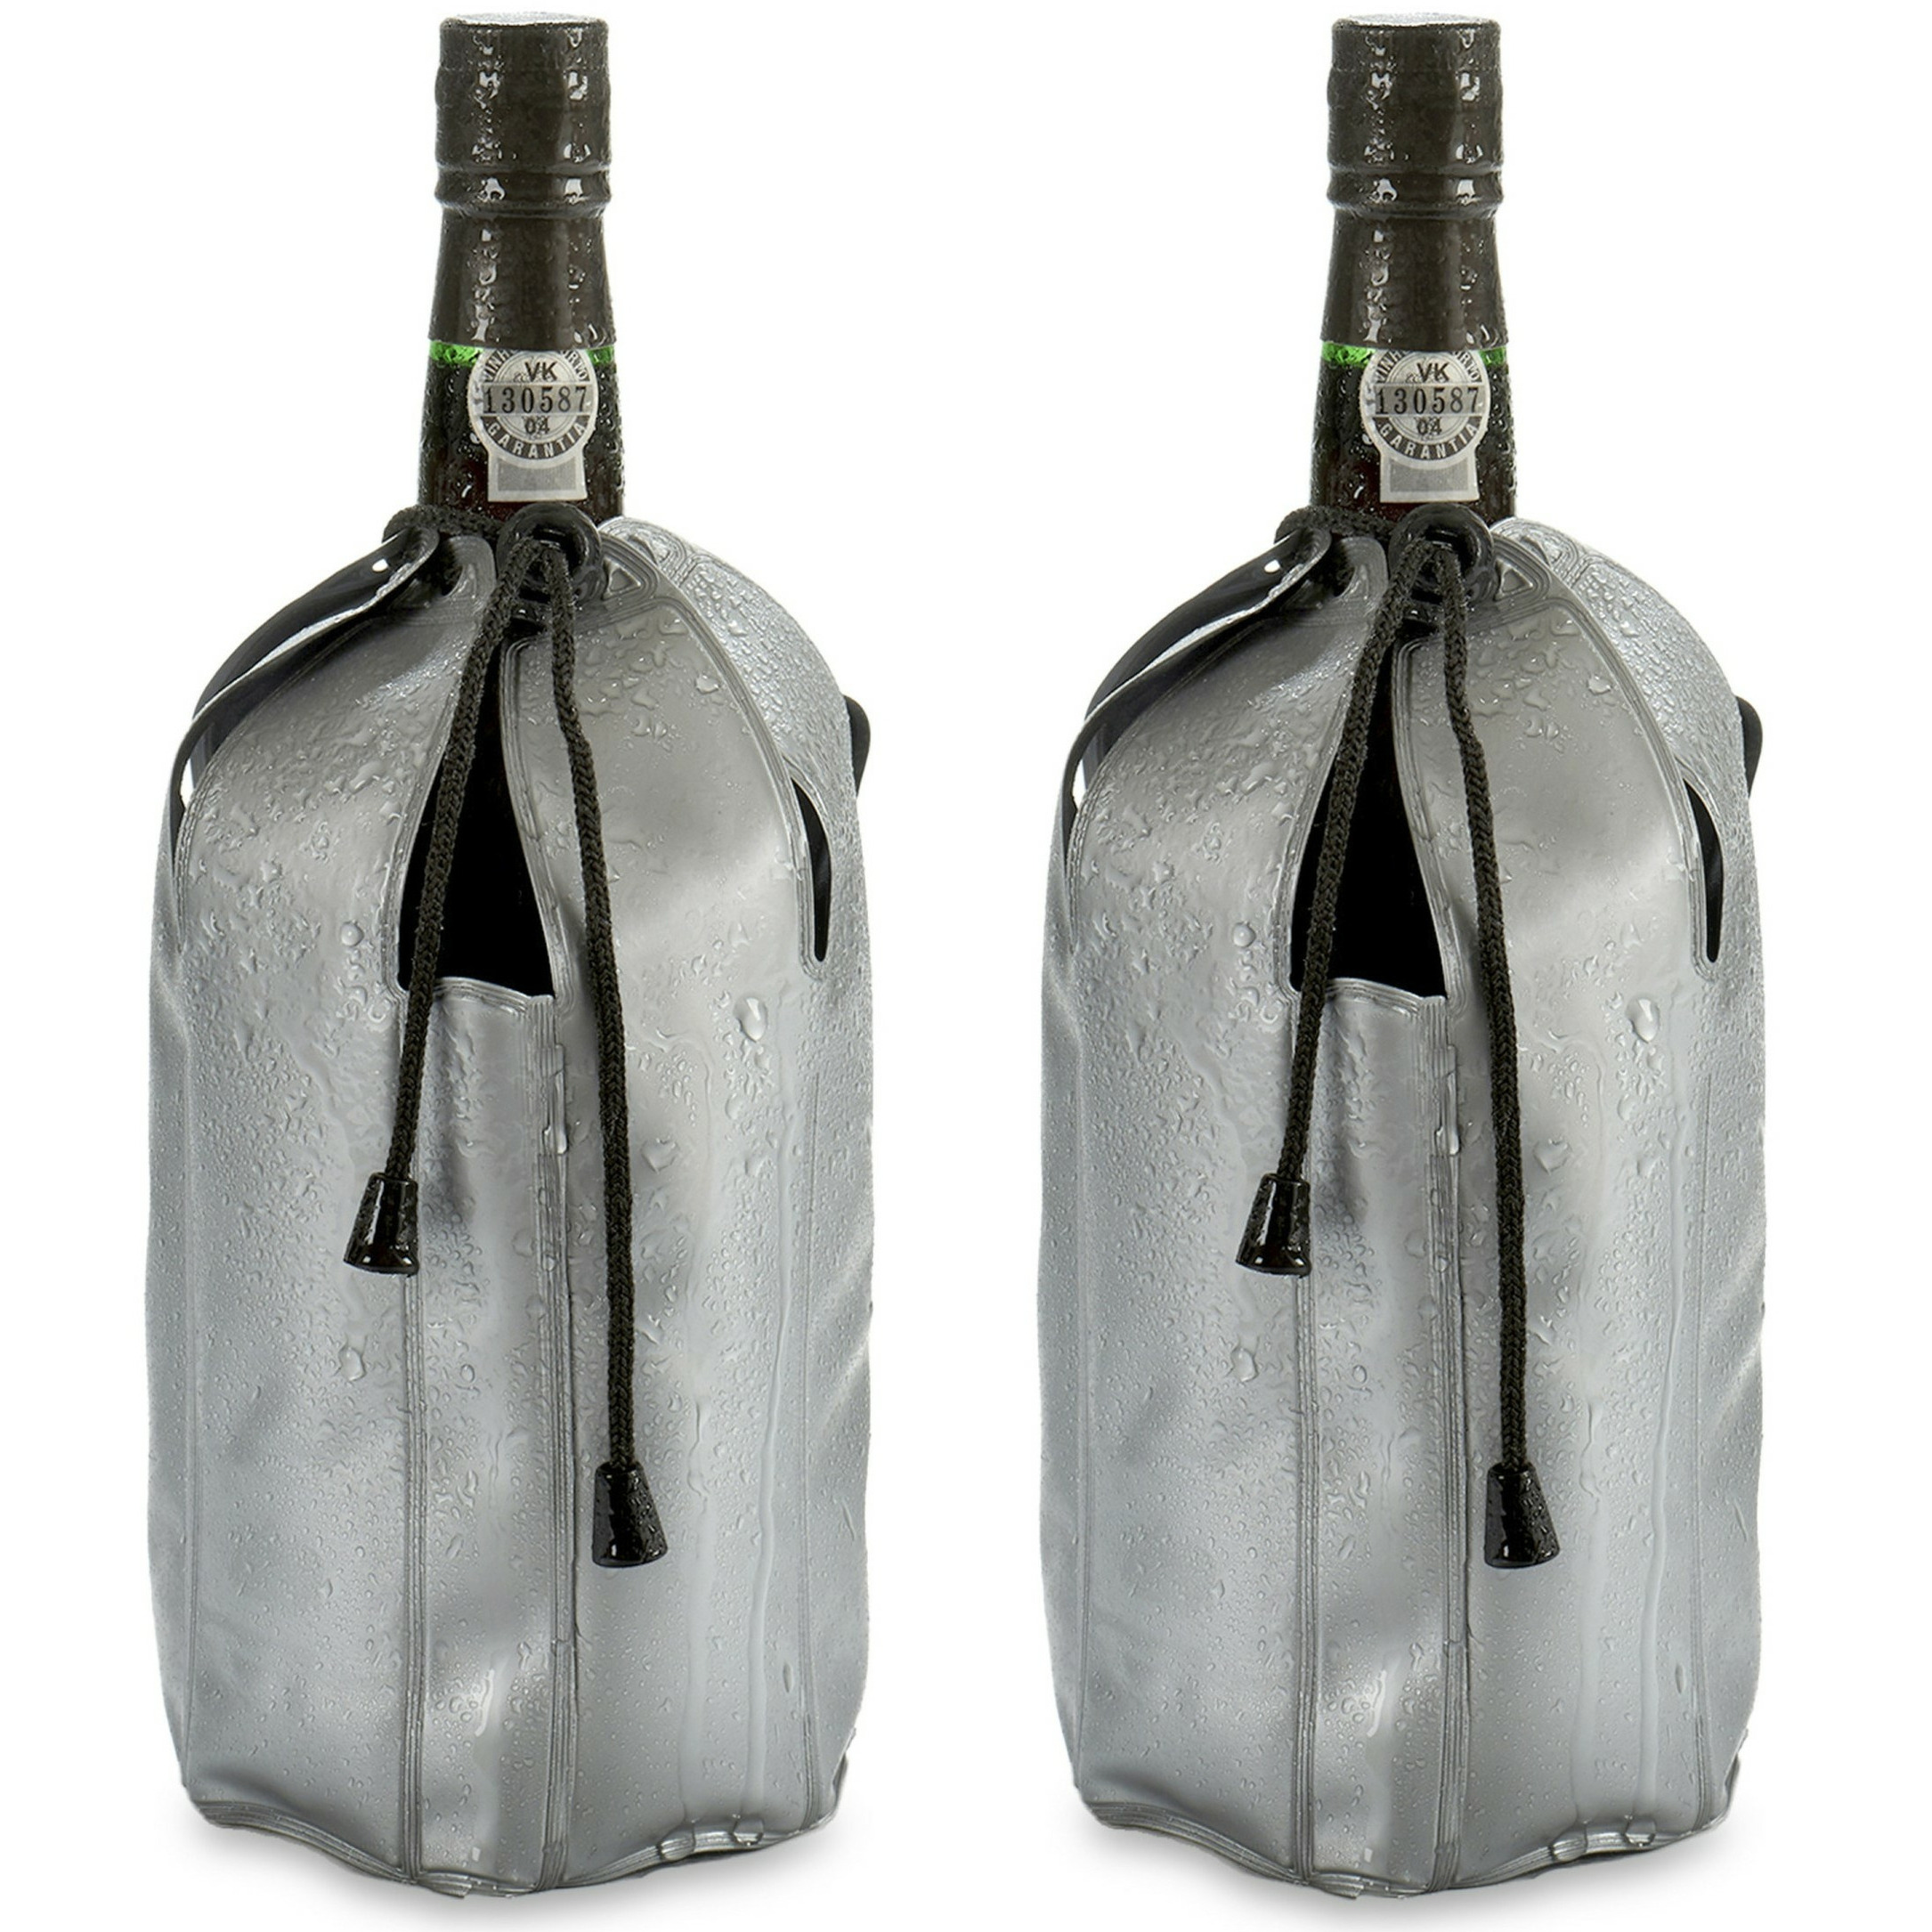 Wijnkoeler-flessenkoeler-koelhoud hoesje 2x voor flessen wijn-water-champagne 25 cm